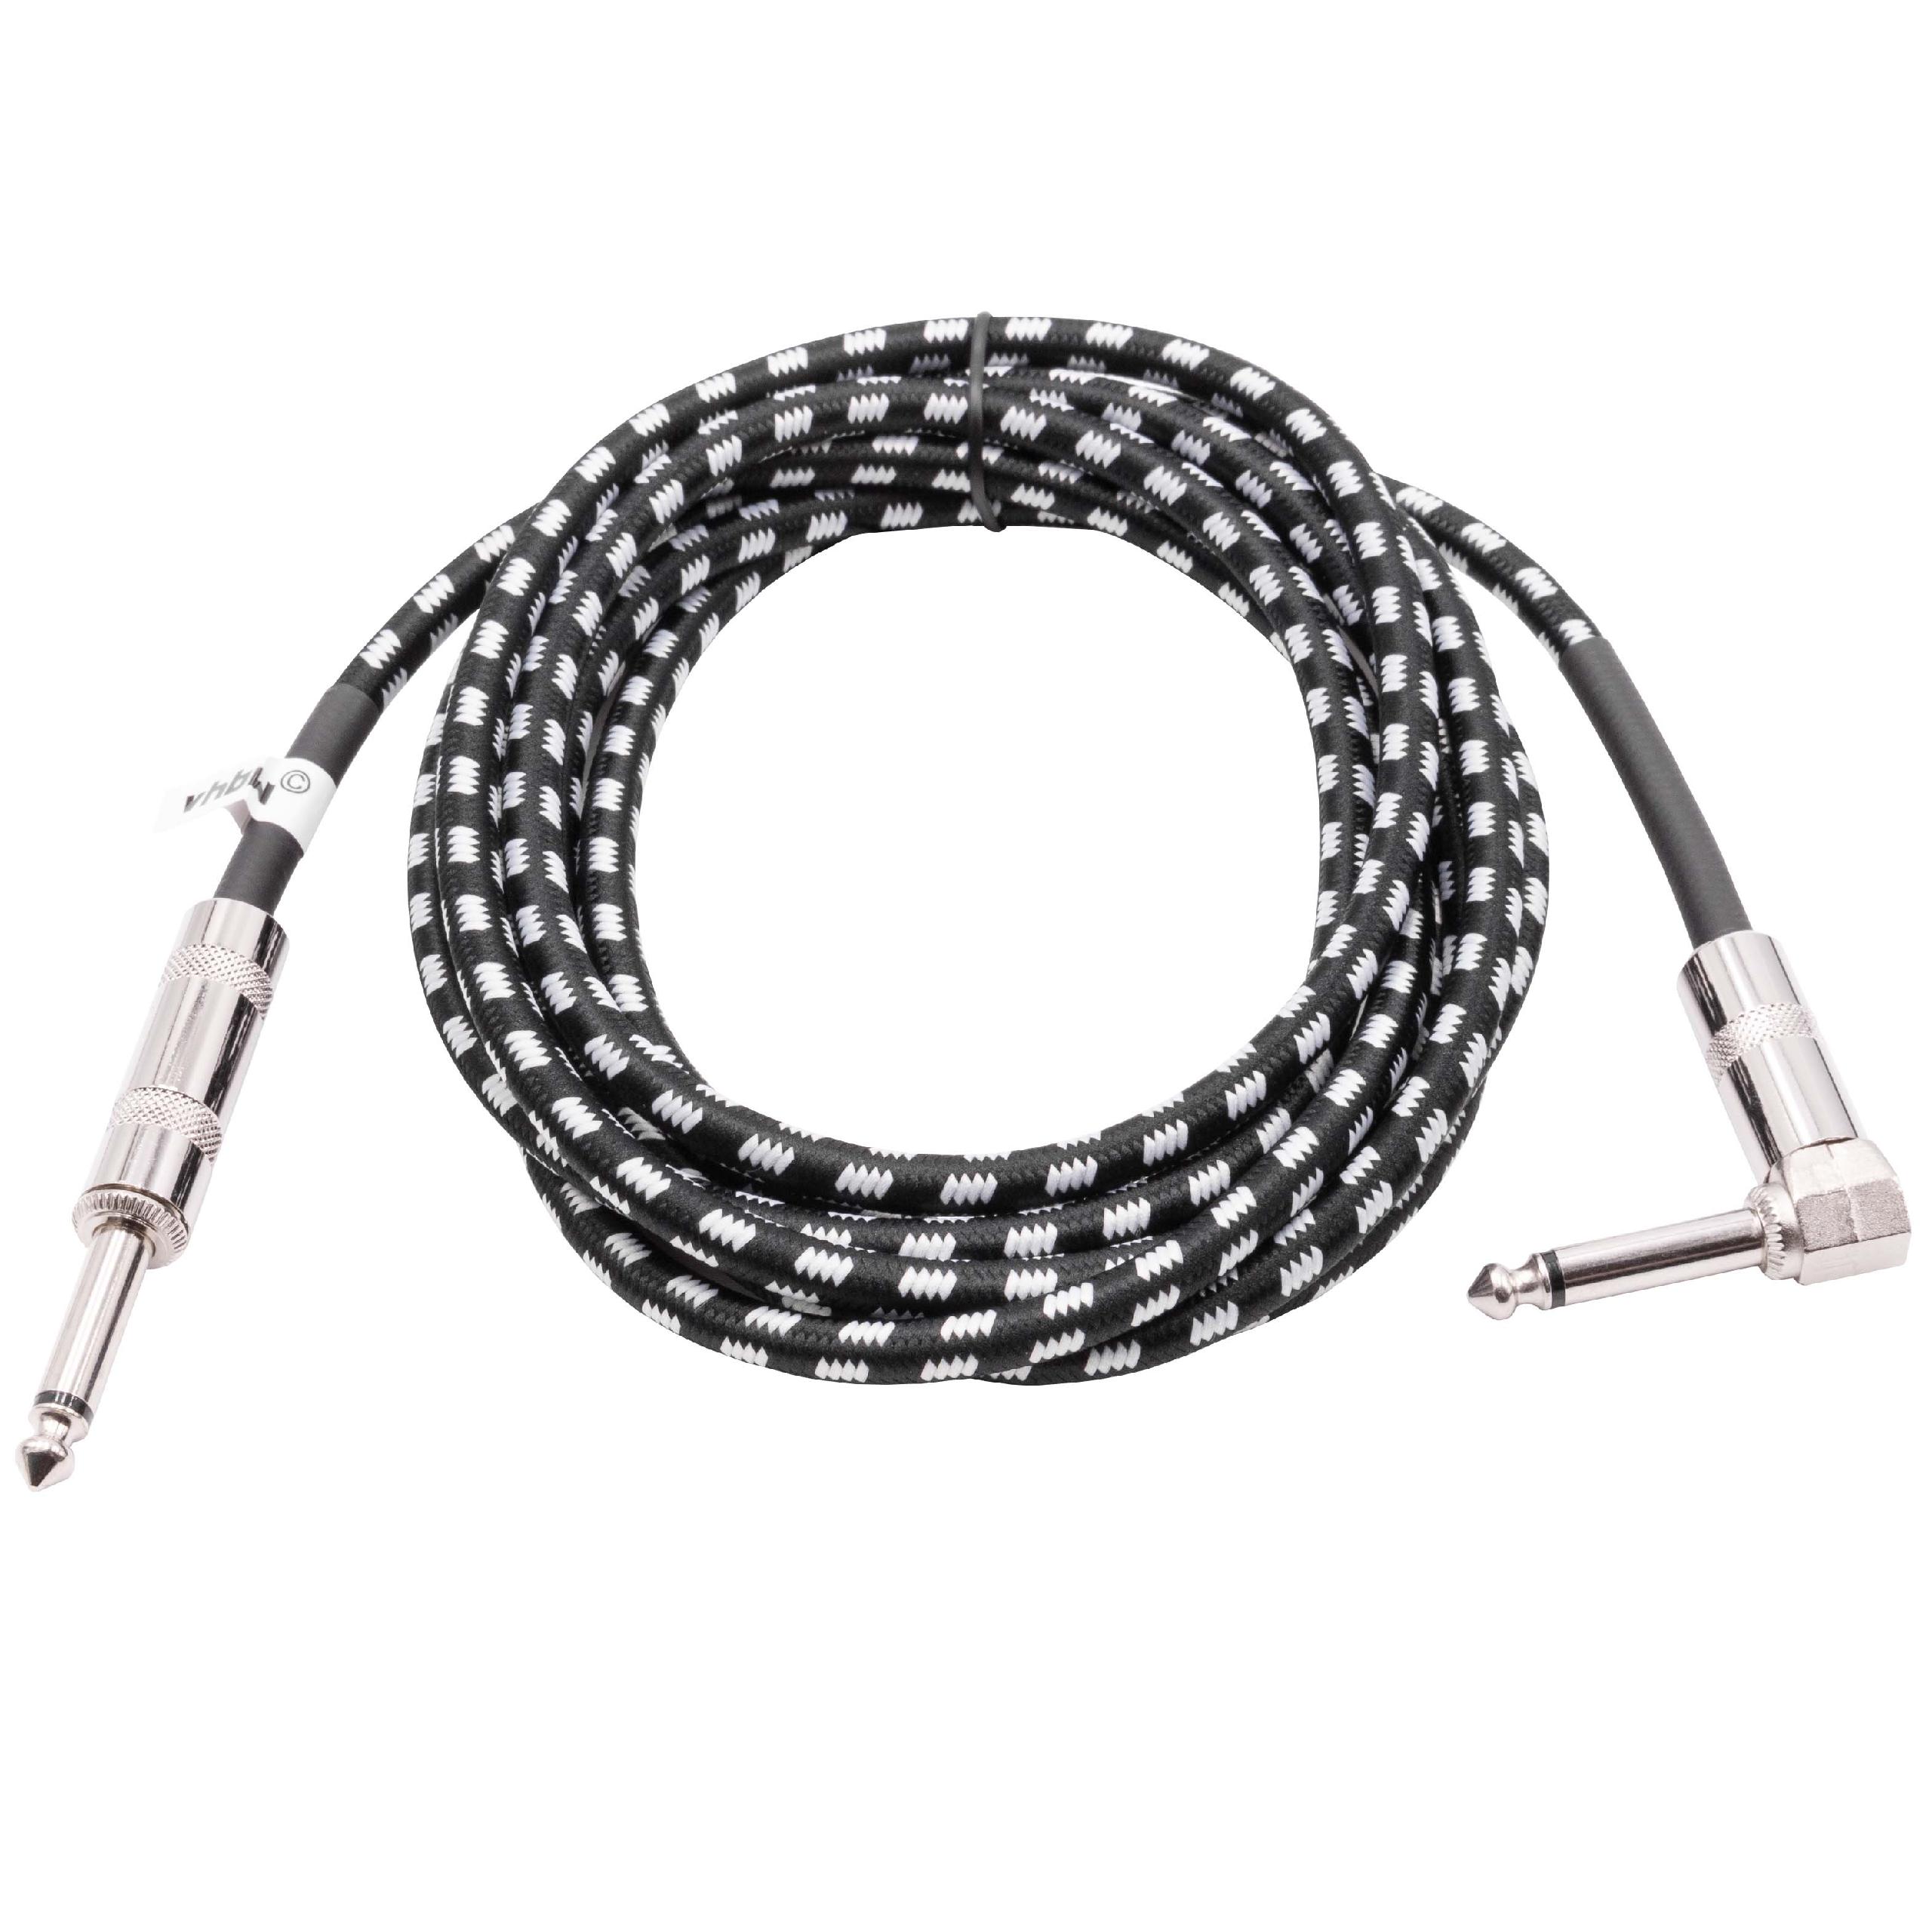 Cable auxiliar 3m para guitarra con clavijas audio de 6,35mm - Clavija macho jack 6,35mm recto-en ángulo